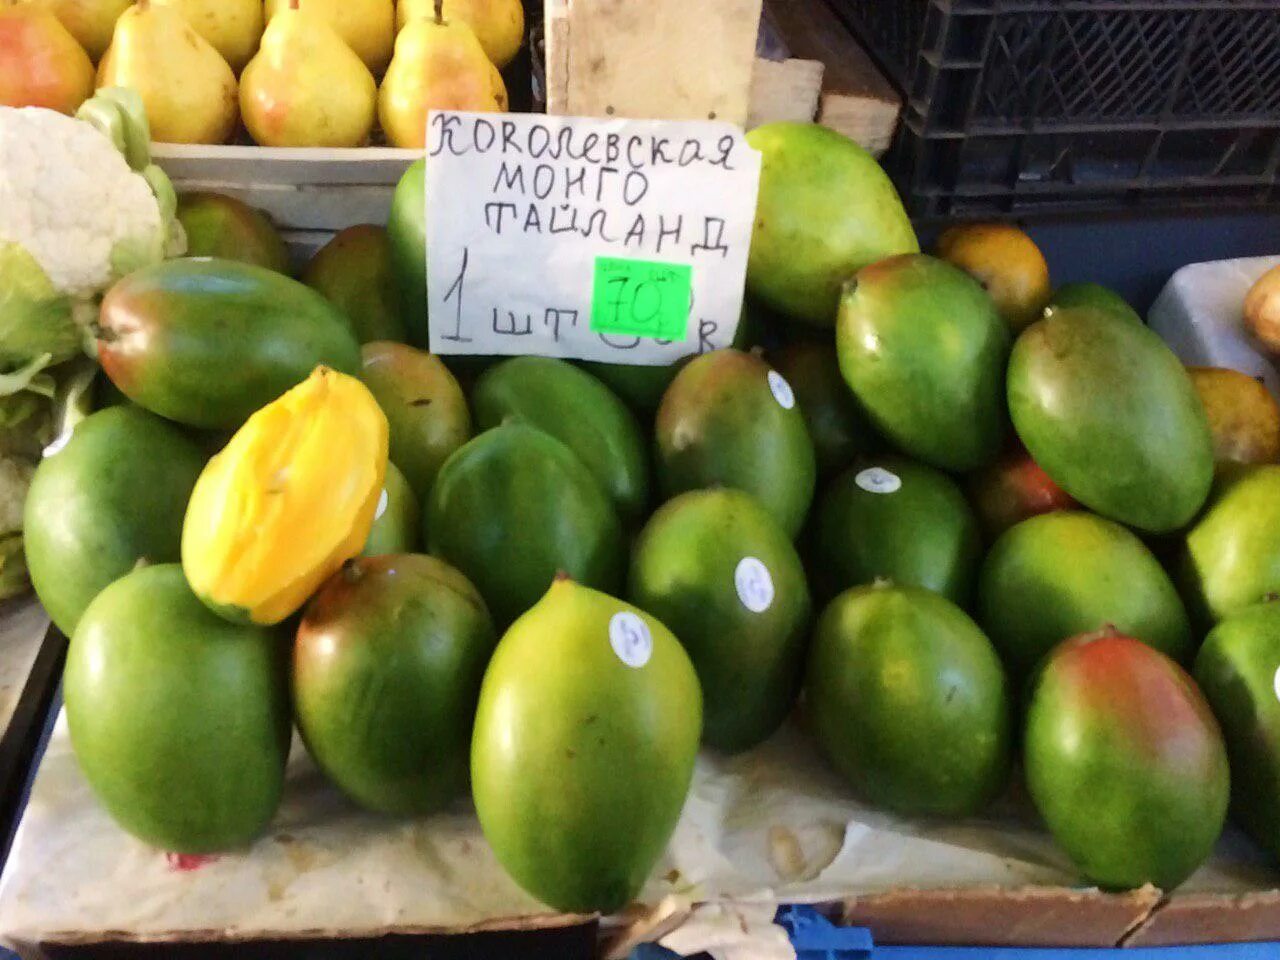 Сорта манго в Тайланде. Манго Тайланд зеленое. Сорта тайского манго. Манго фрукт тайский сорт. Сколько стоит кг манго